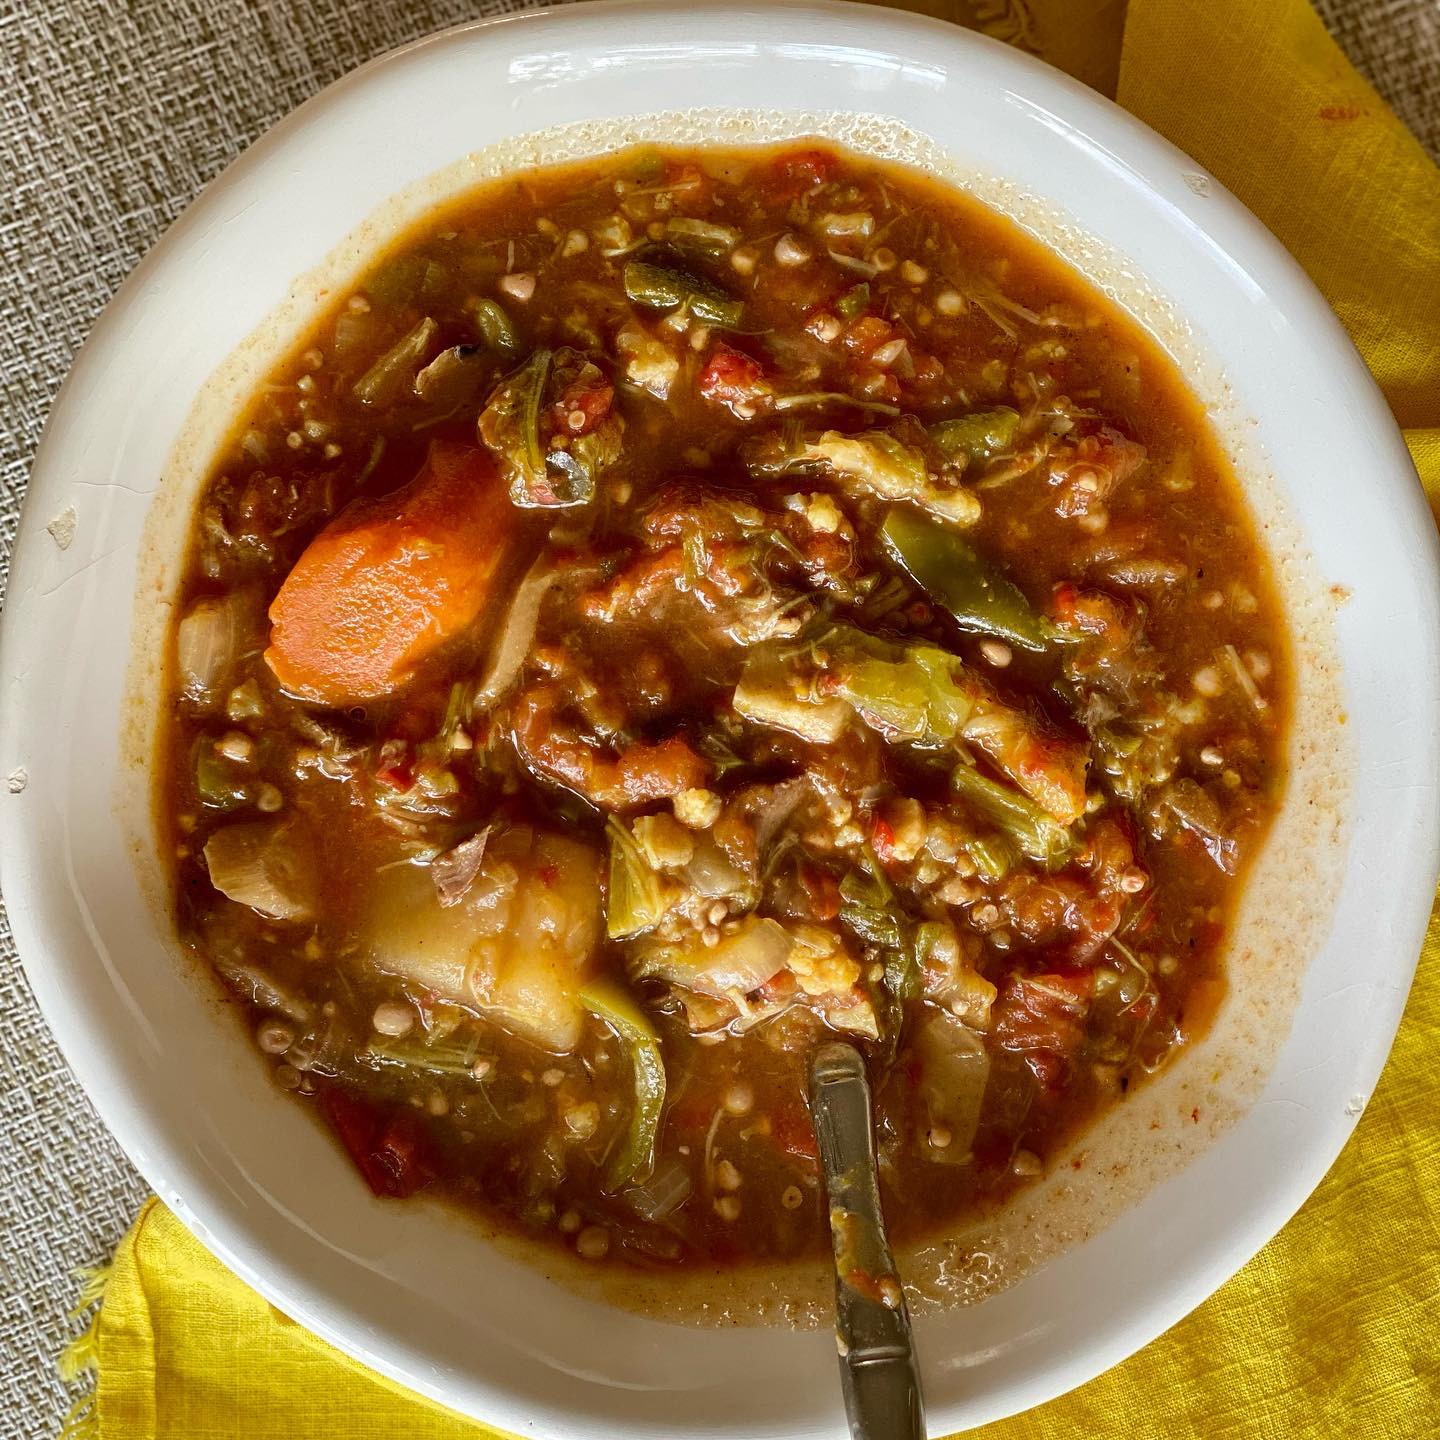 Hearty Vegetable gumbo stew